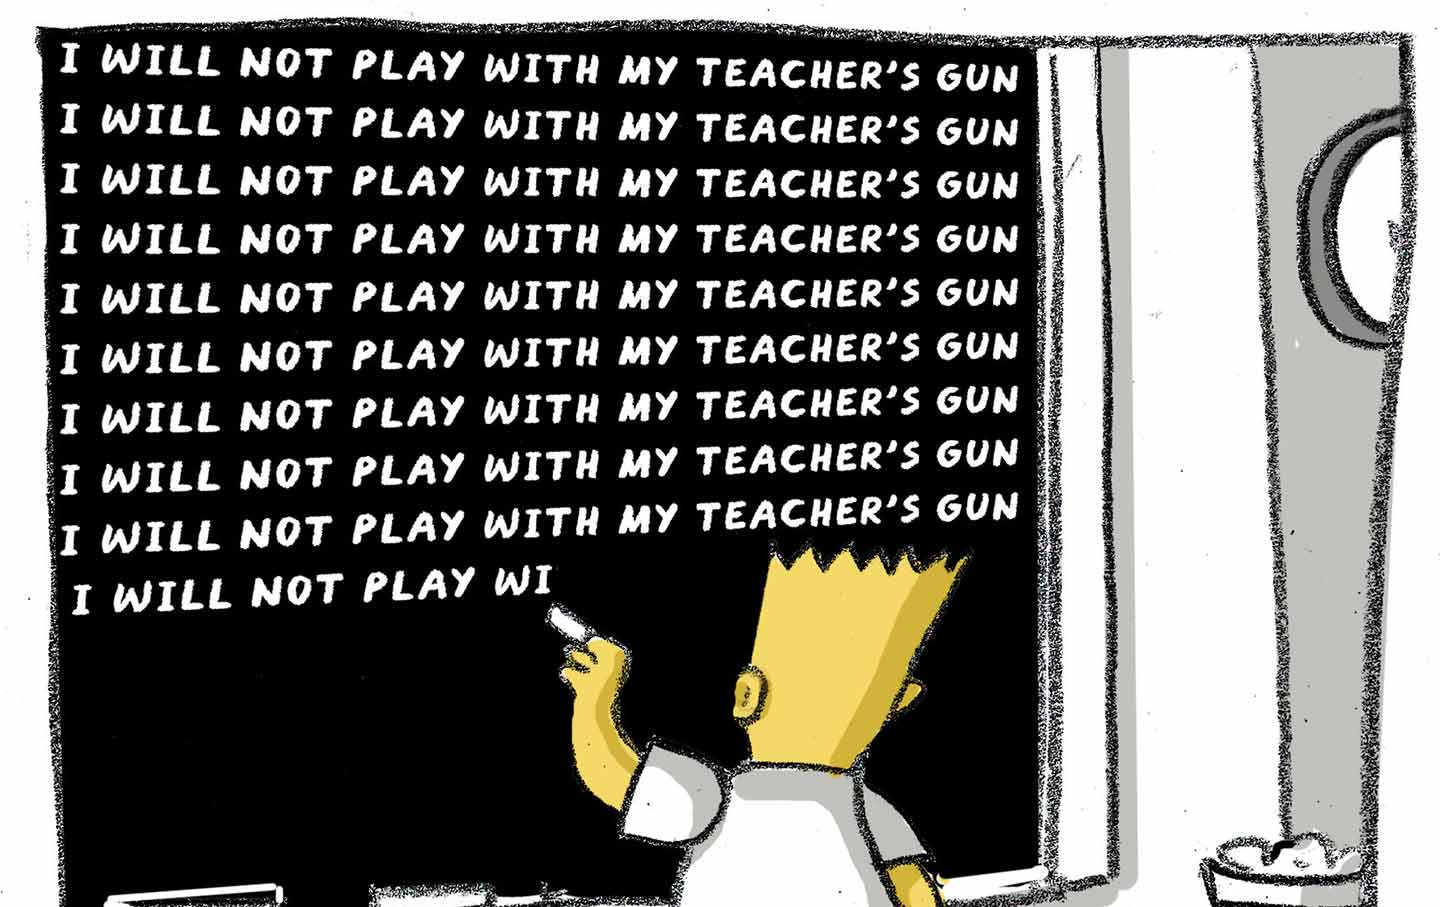 Arm Teachers?